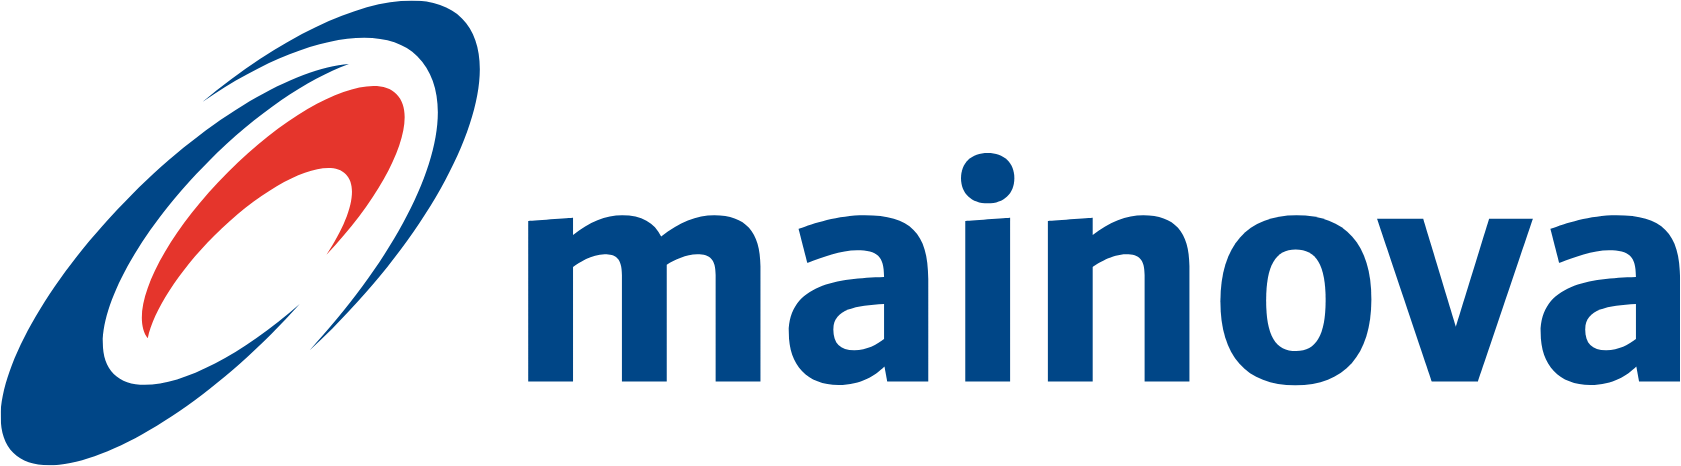 Mainova logo large (transparent PNG)